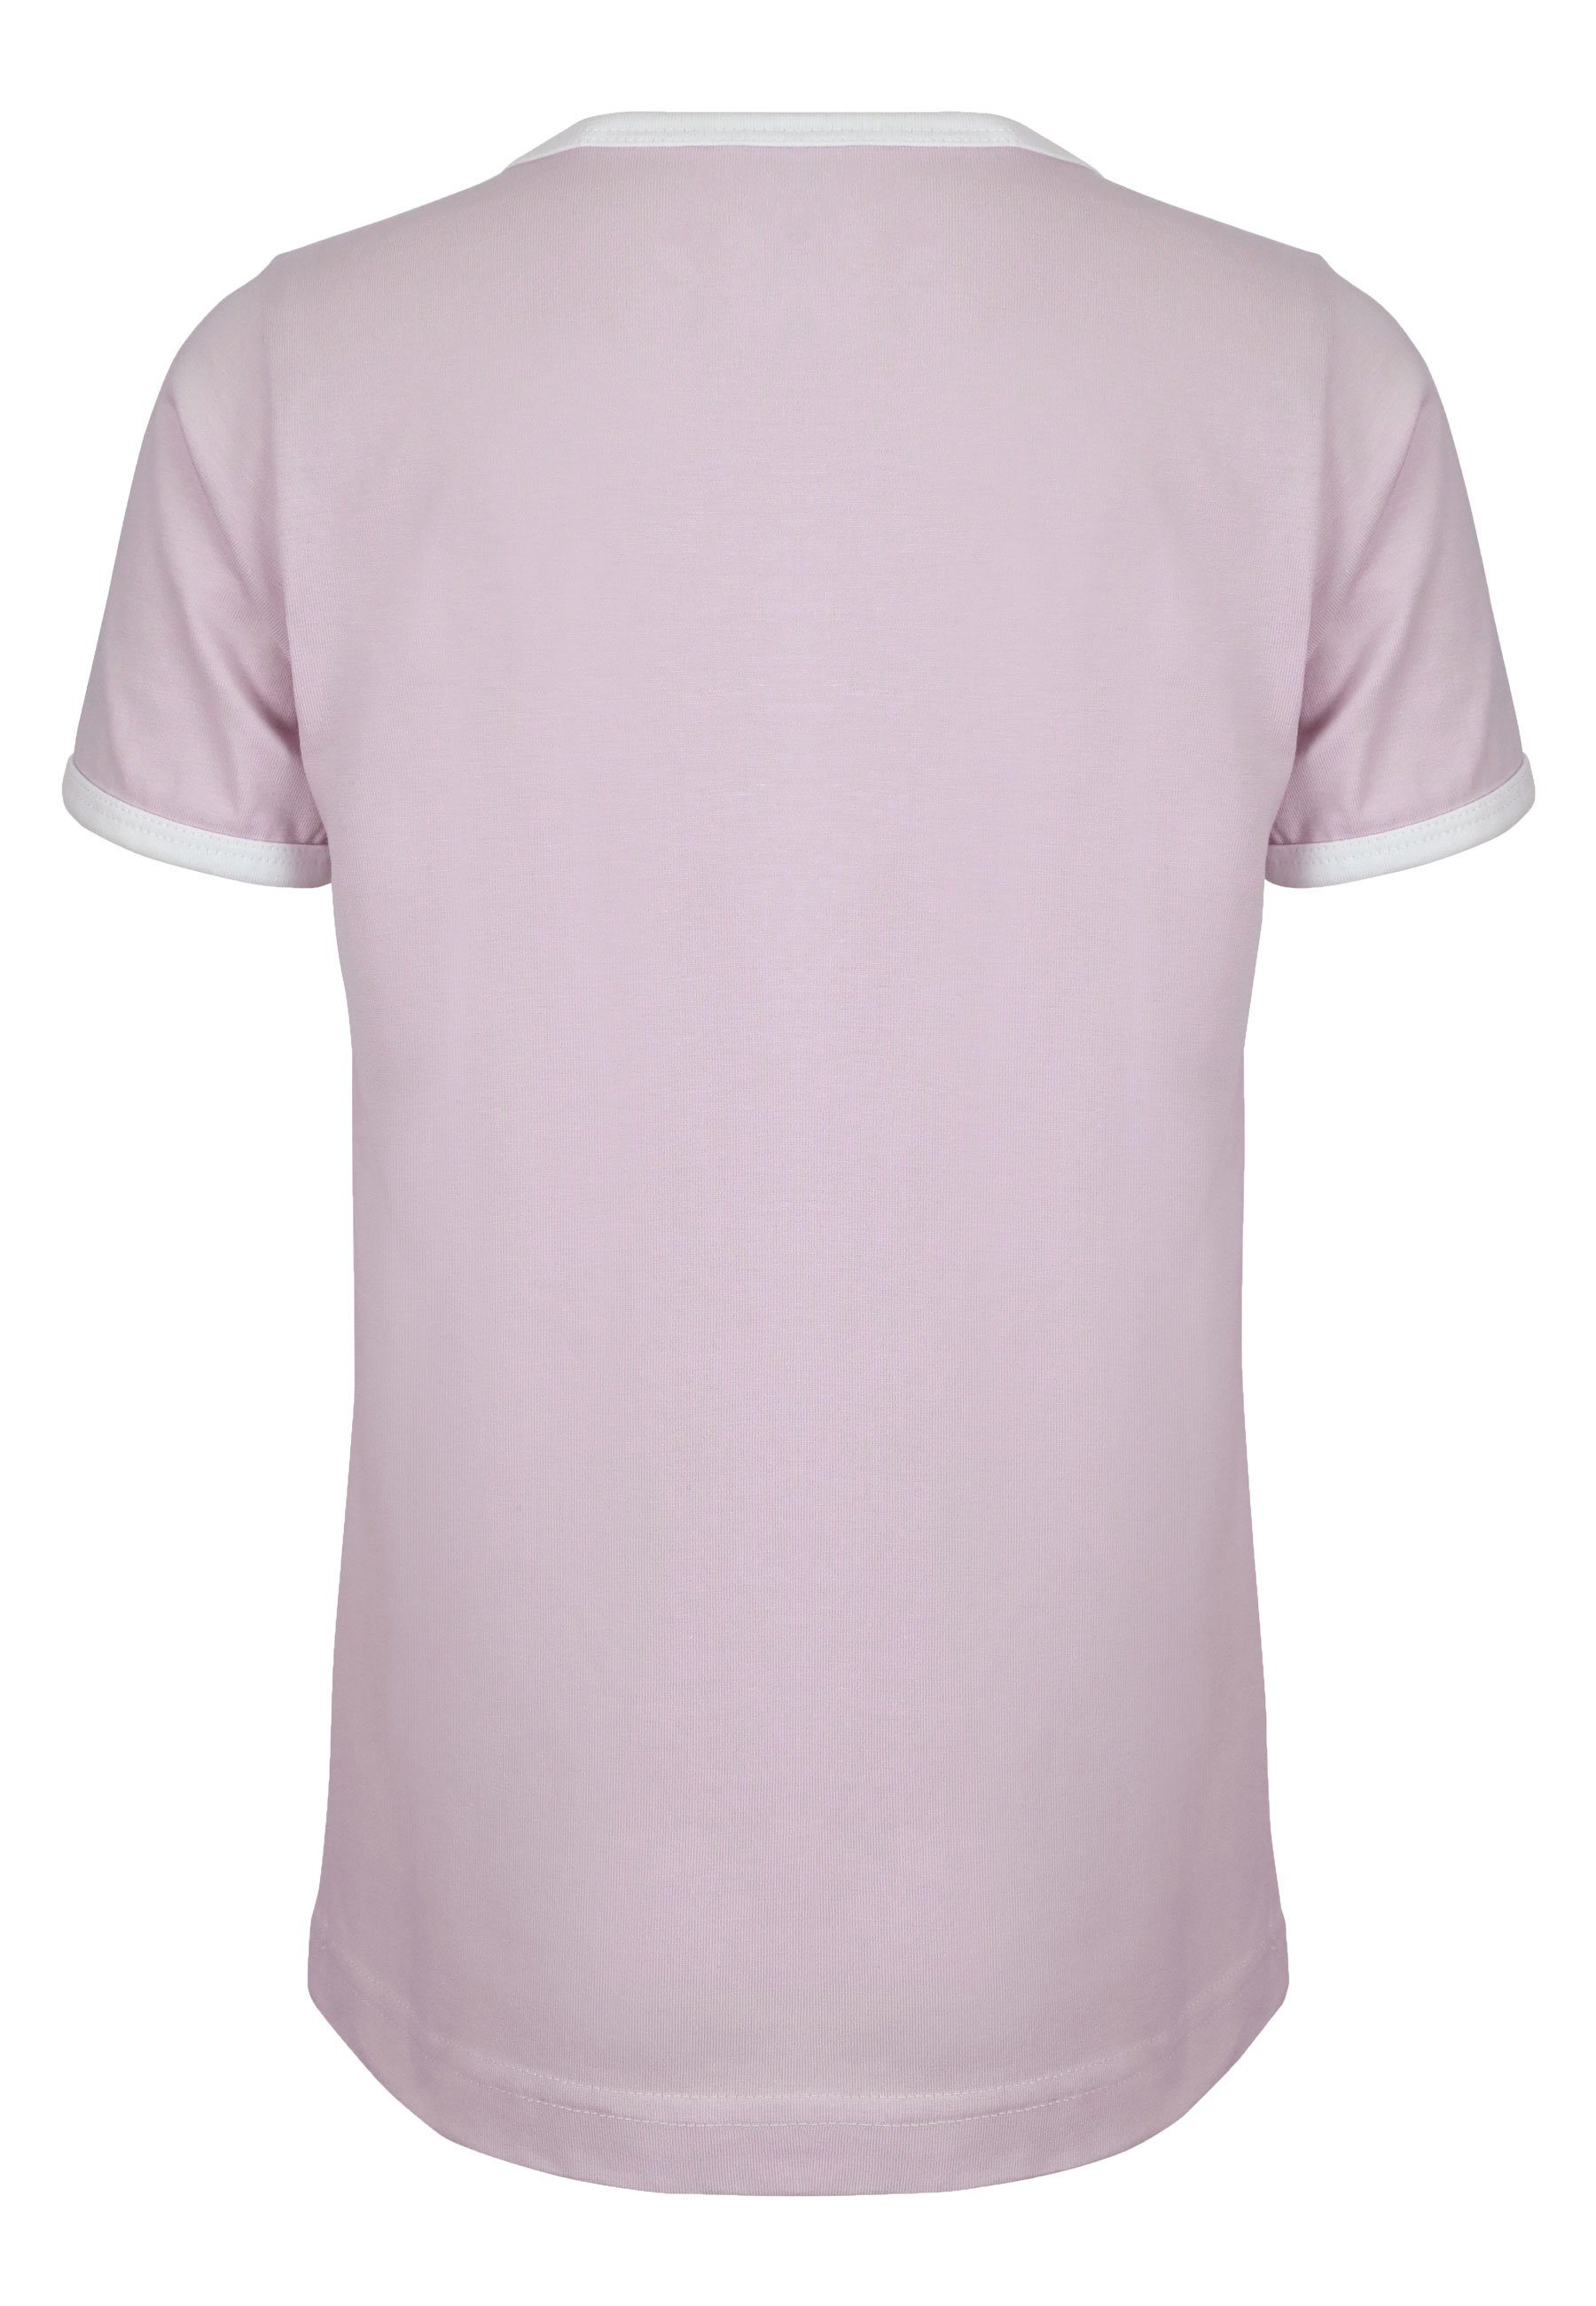 Elkline T-Shirt lavender Zum Brust Fahrrad tailliert Strand leicht Print